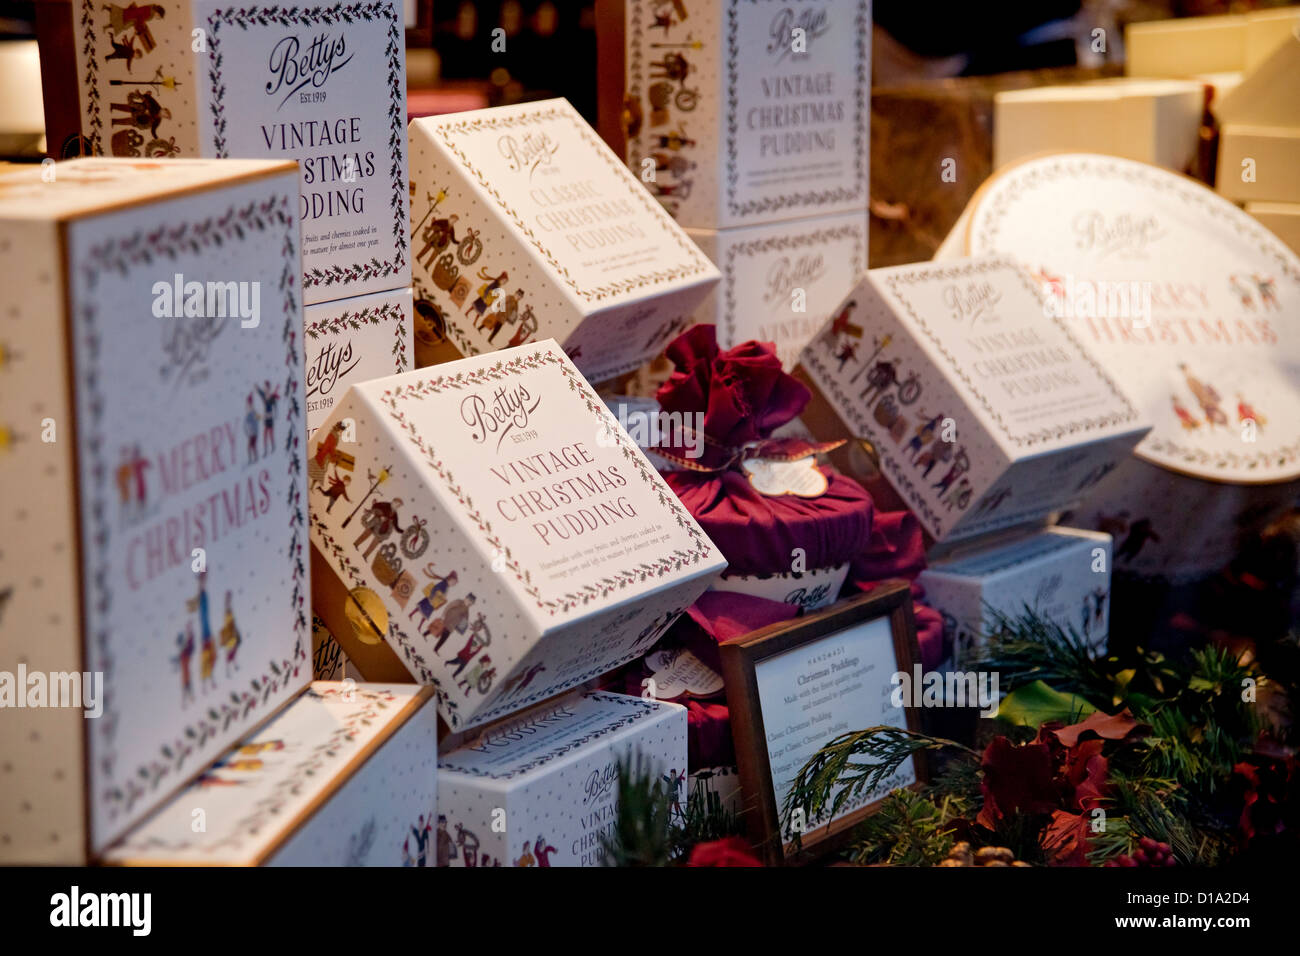 Gros plan des gâteaux de Noël en boîte et des poudings Bettys tearoms boutique vitrine York North Yorkshire Angleterre Royaume-Uni Grande-Bretagne Banque D'Images